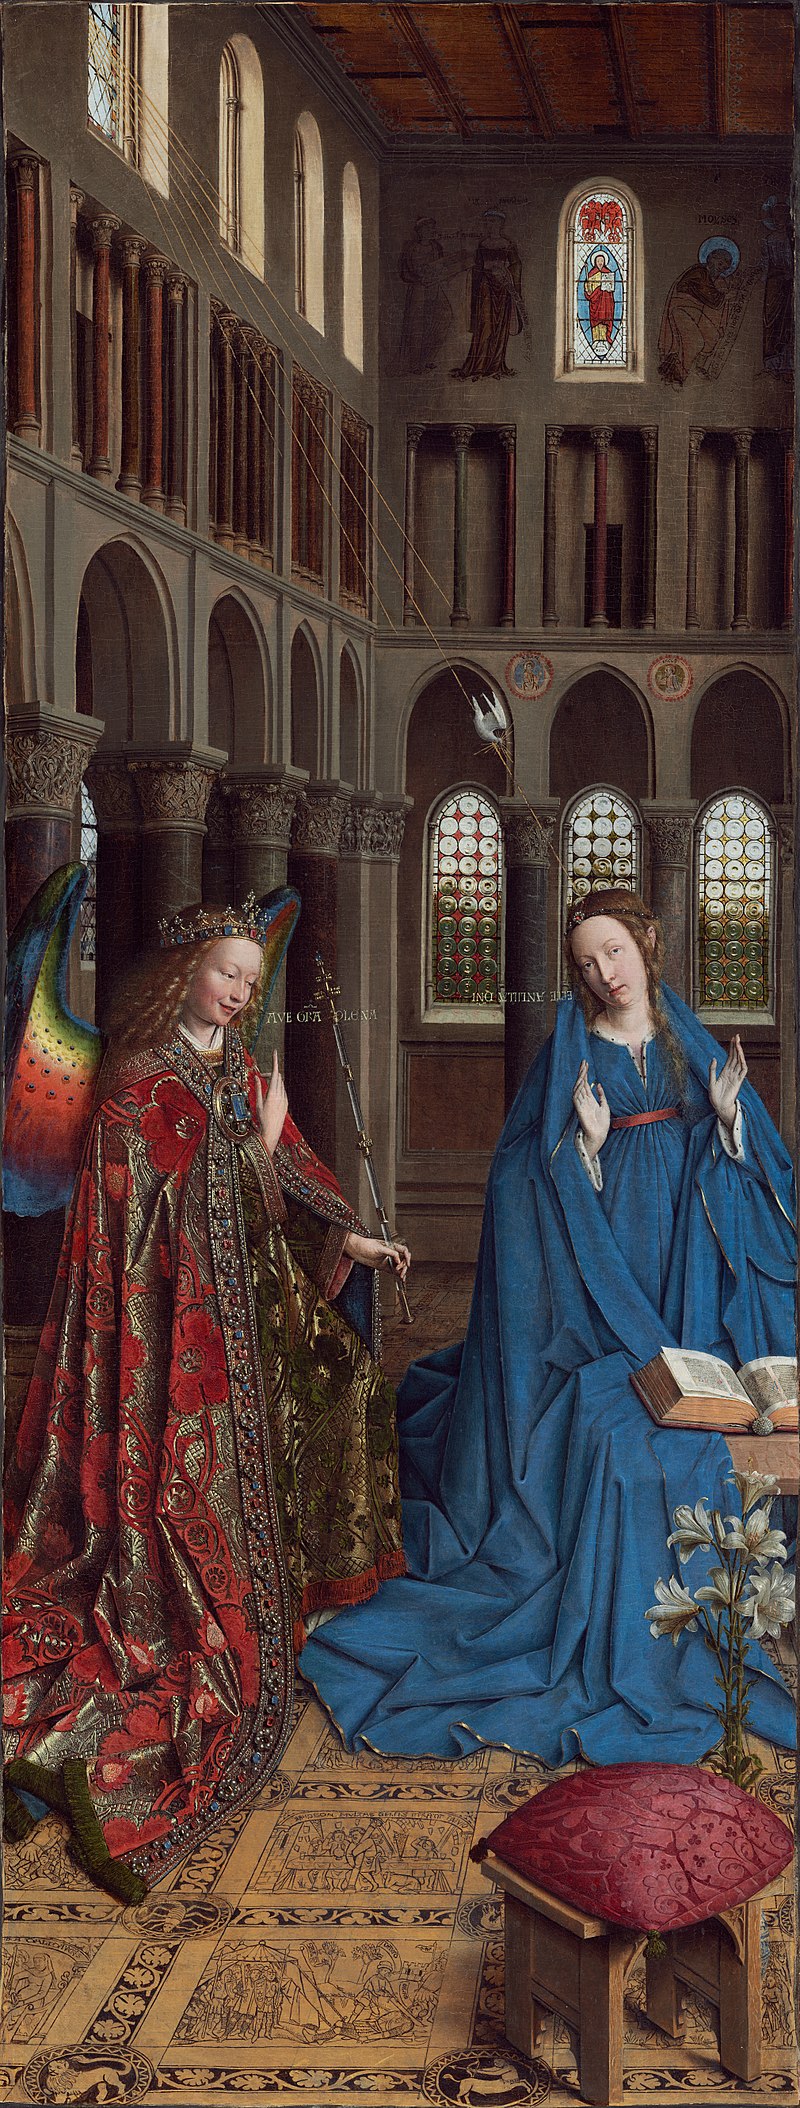 A Anunciação by Jan van Eyck - c. 1434 - 93 x 37 cm 